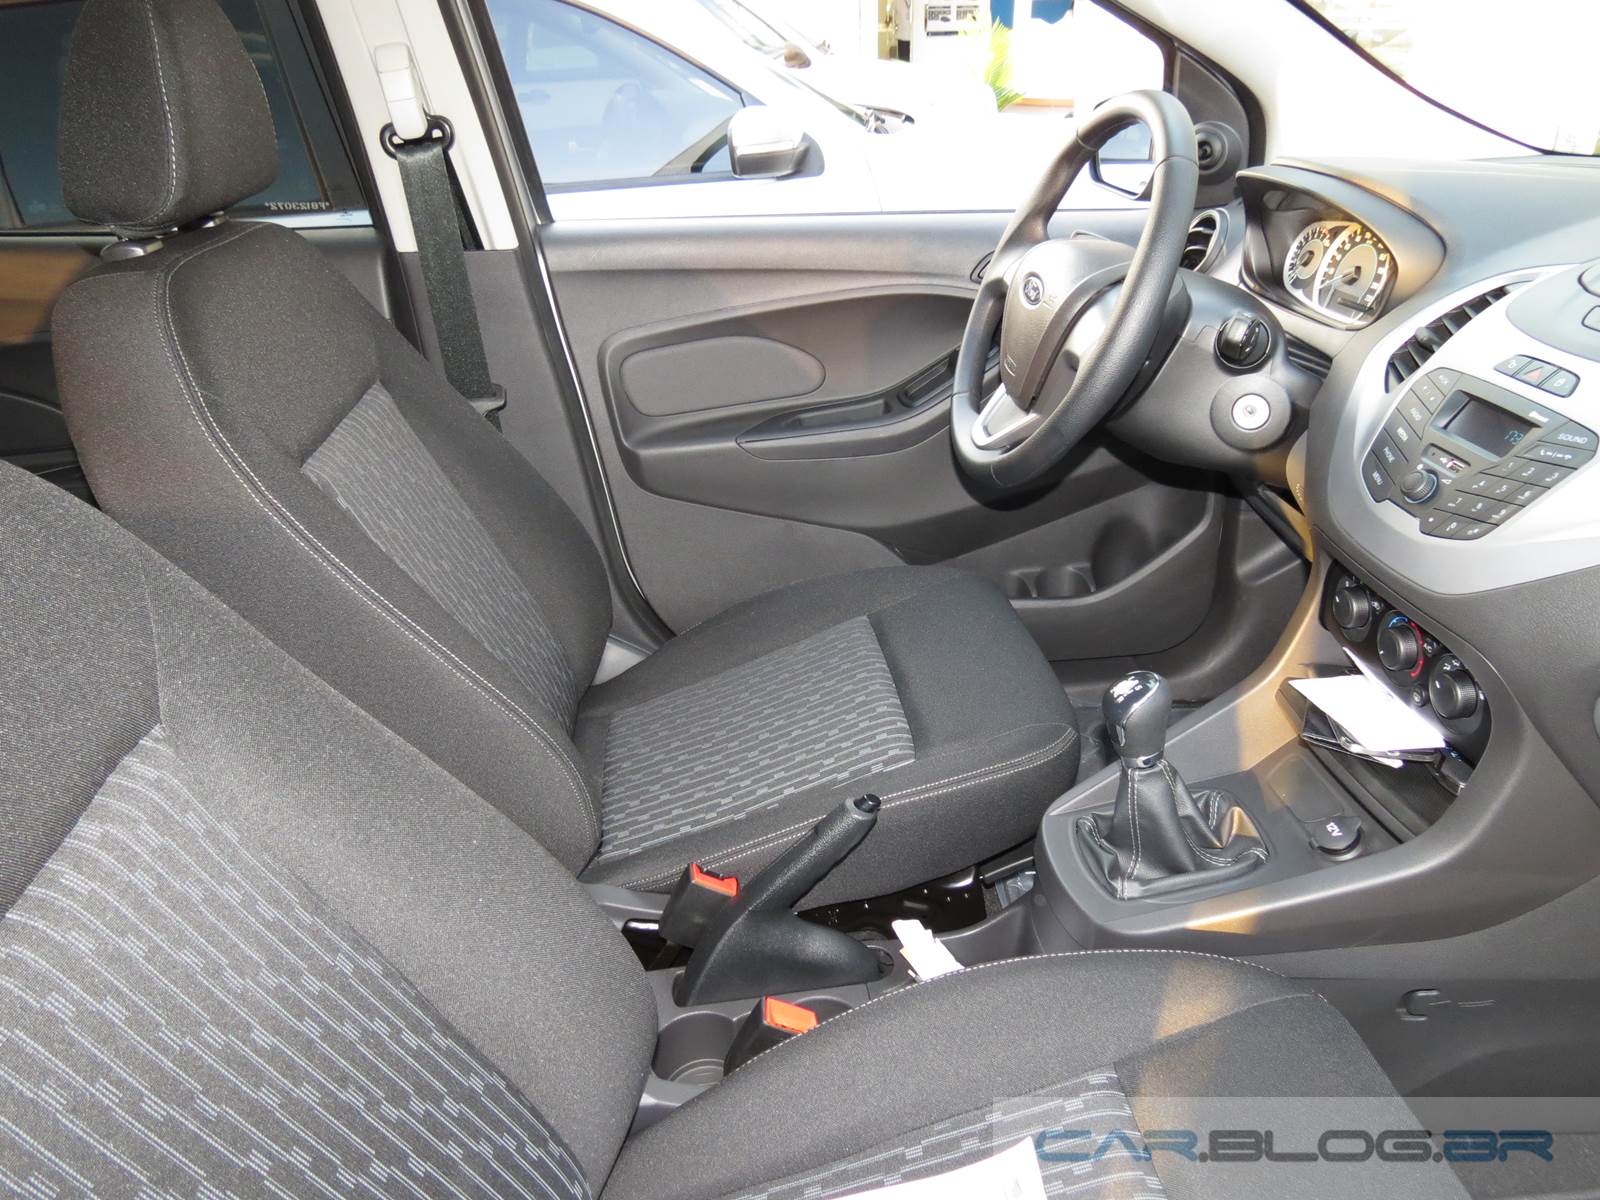 Novo Ford KA SE 2015 - teste de longa duração